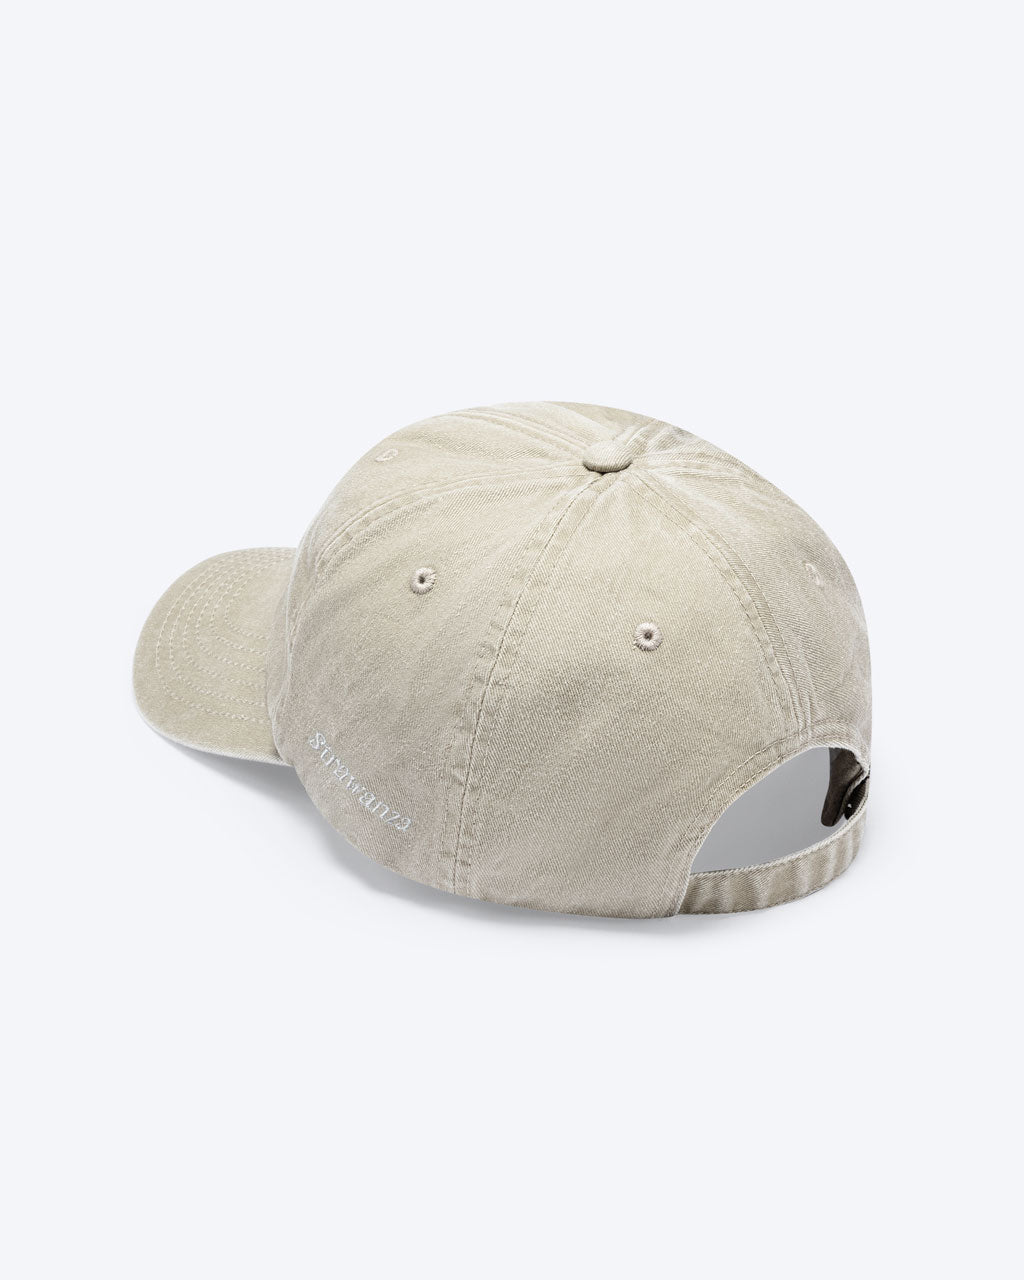 Eine Vintage Sand Bavarian Cap mit einem in weiß gestickten "Strawanza" Schriftzug auf der Seite der Cap.